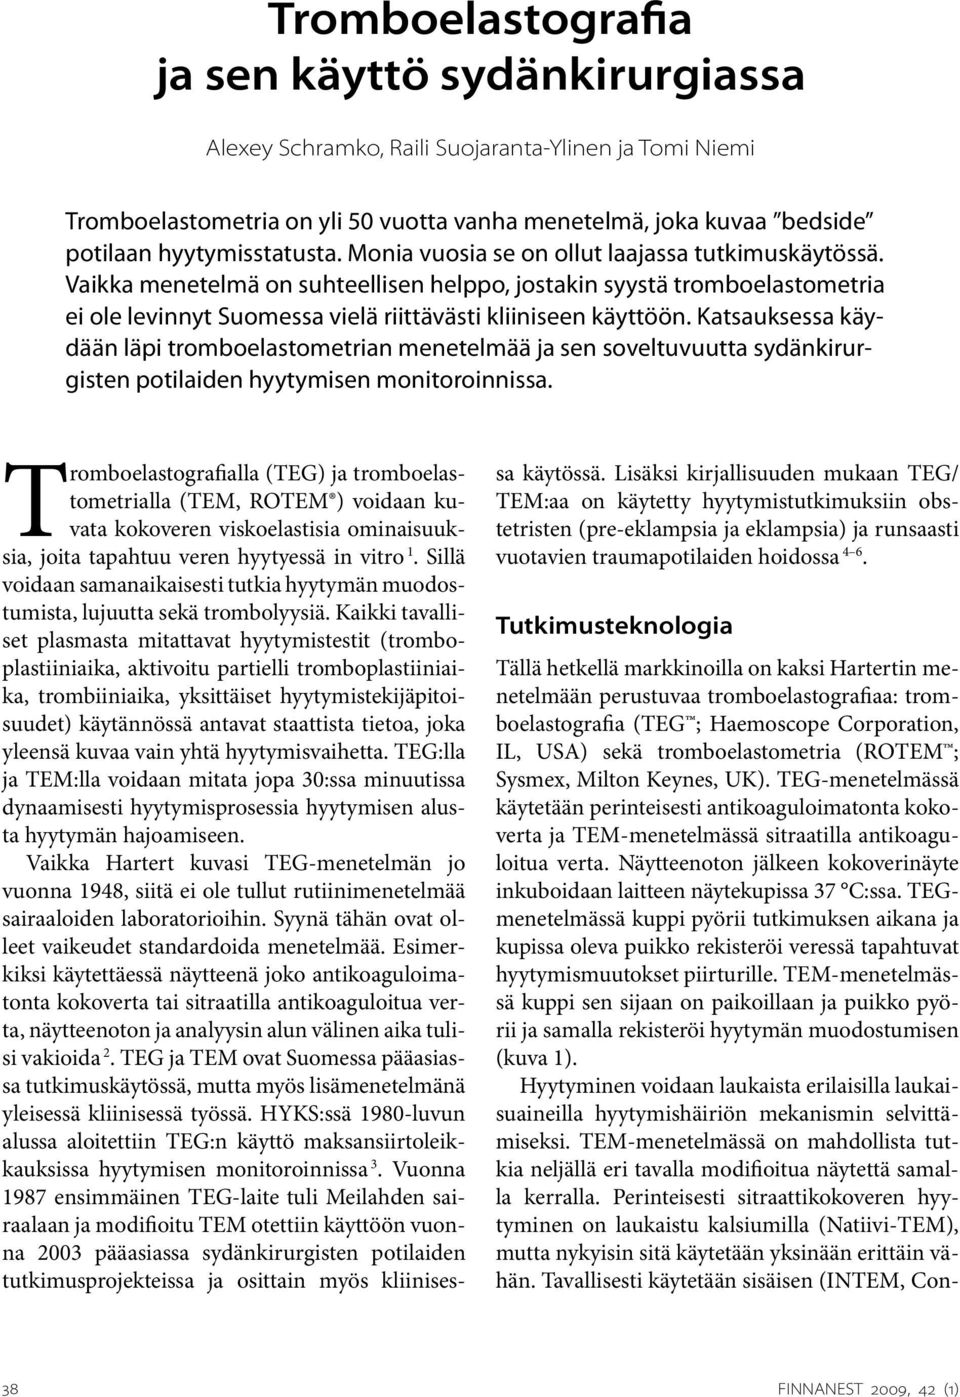 Vaikka menetelmä on suhteellisen helppo, jostakin syystä tromboelastometria ei ole levinnyt Suomessa vielä riittävästi kliiniseen käyttöön.